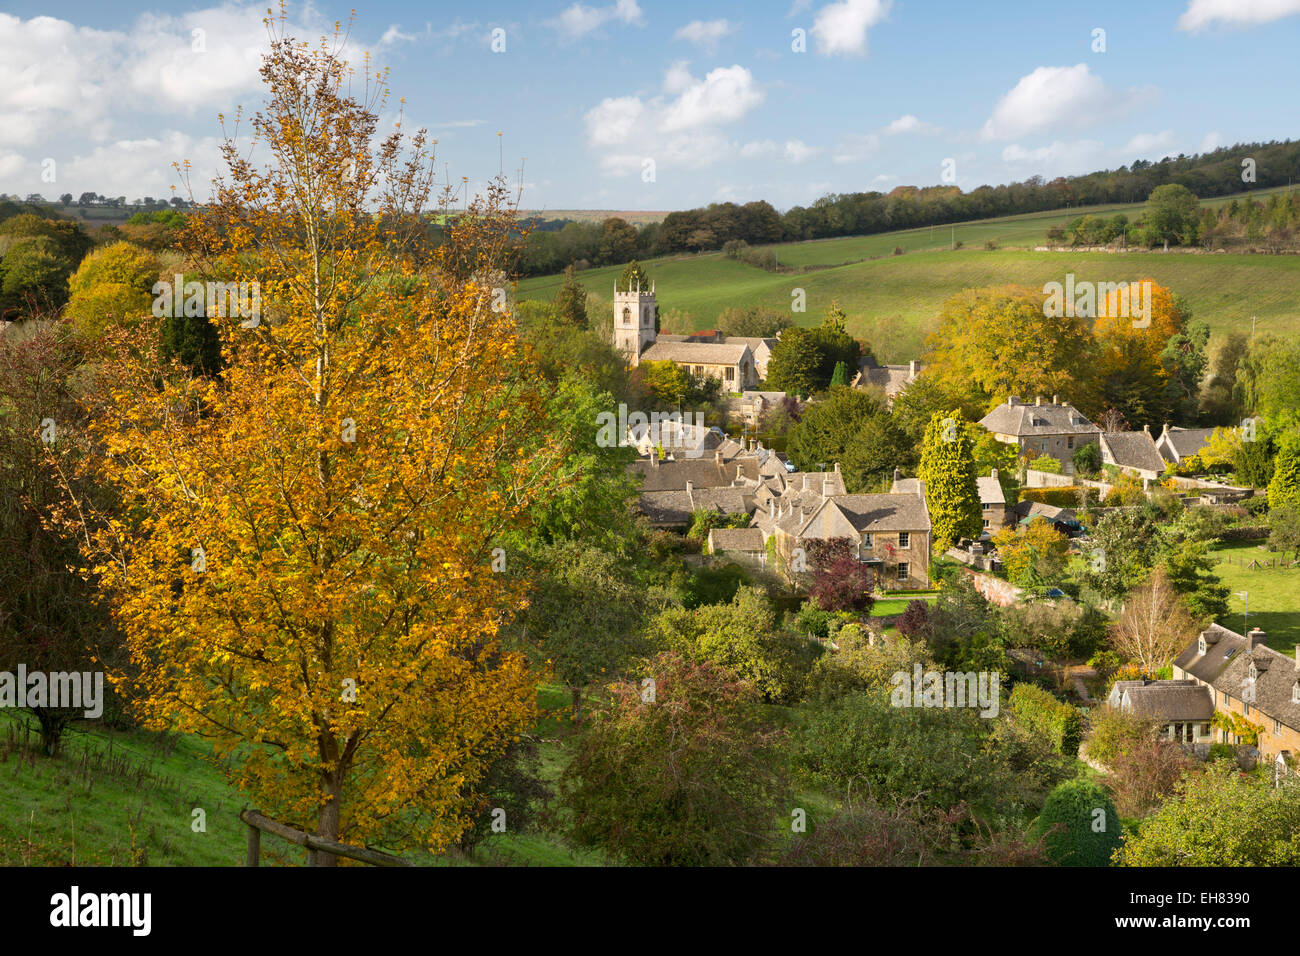 Village de l'automne, Naunton, Cotswolds, Gloucestershire, Angleterre, Royaume-Uni, Europe Banque D'Images